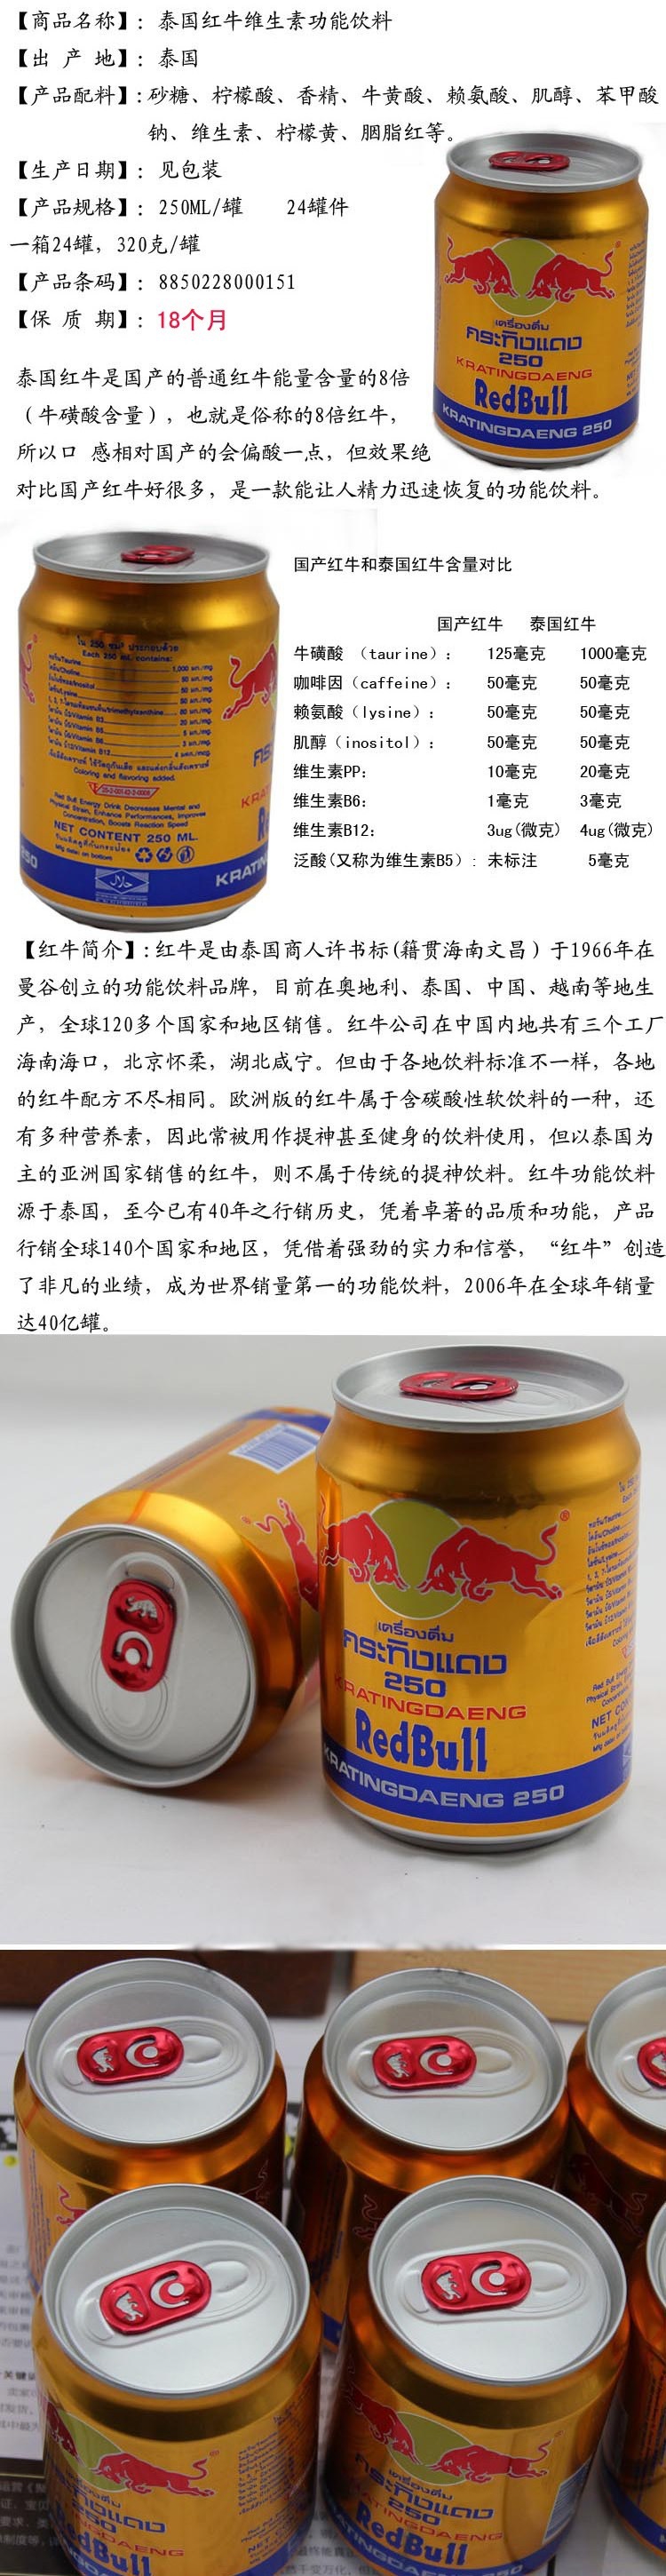 泰国红牛批发 8倍功效维生素功能饮料 250ml听装泰国进口红牛